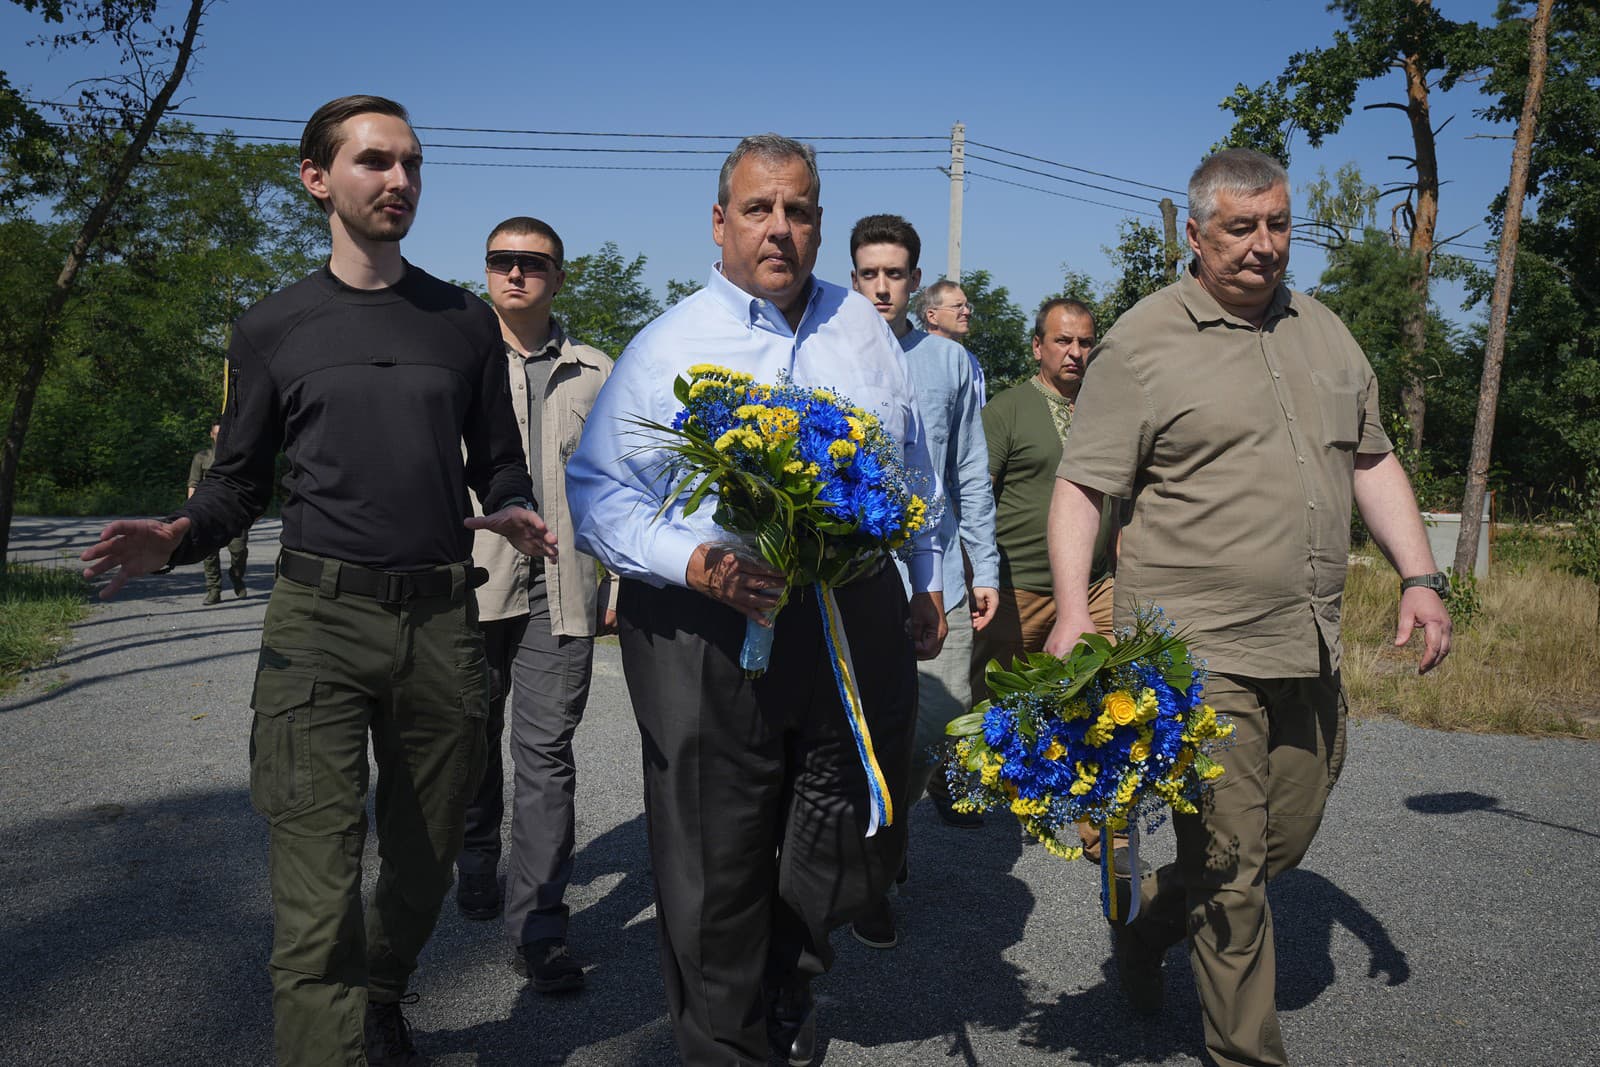 Republikánsky kandidát na prezidenta, bývalý guvernér New Jersey Chris Christie, sa zúčastňuje na ceremónii kladenia kvetov pri návšteve dediny Moshchun na okraji Kyjeva.